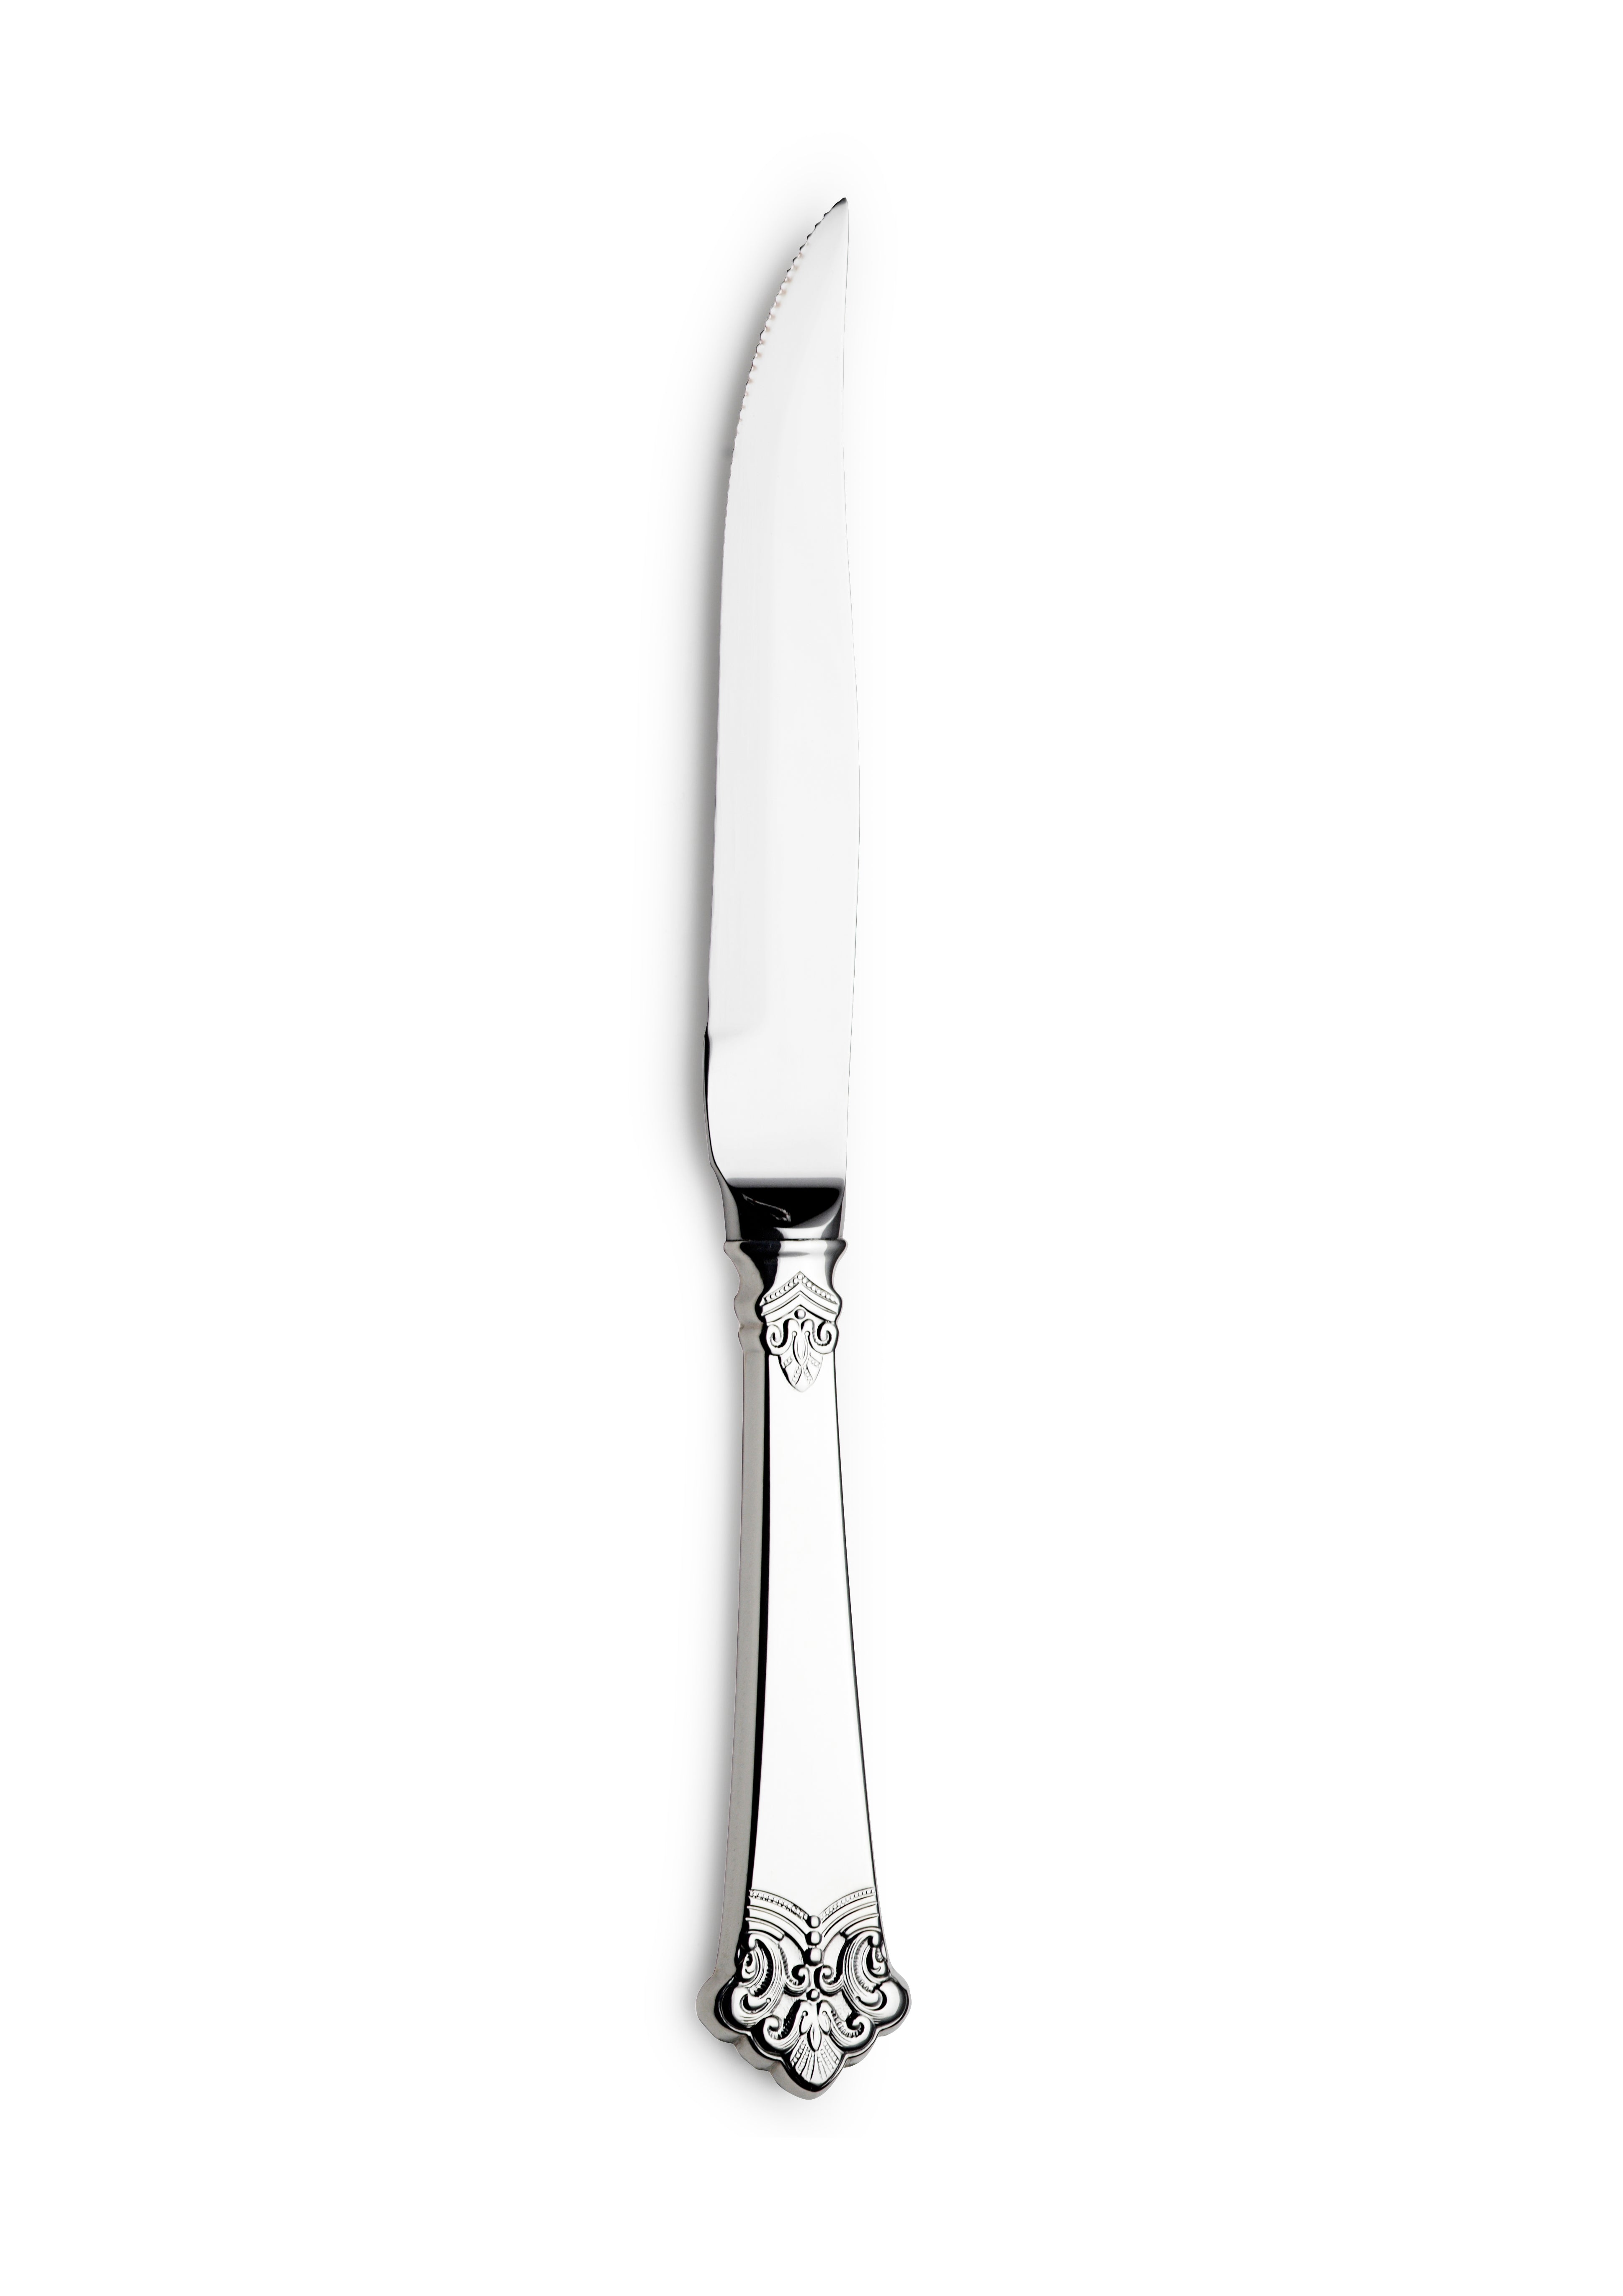 Anitra steak knife